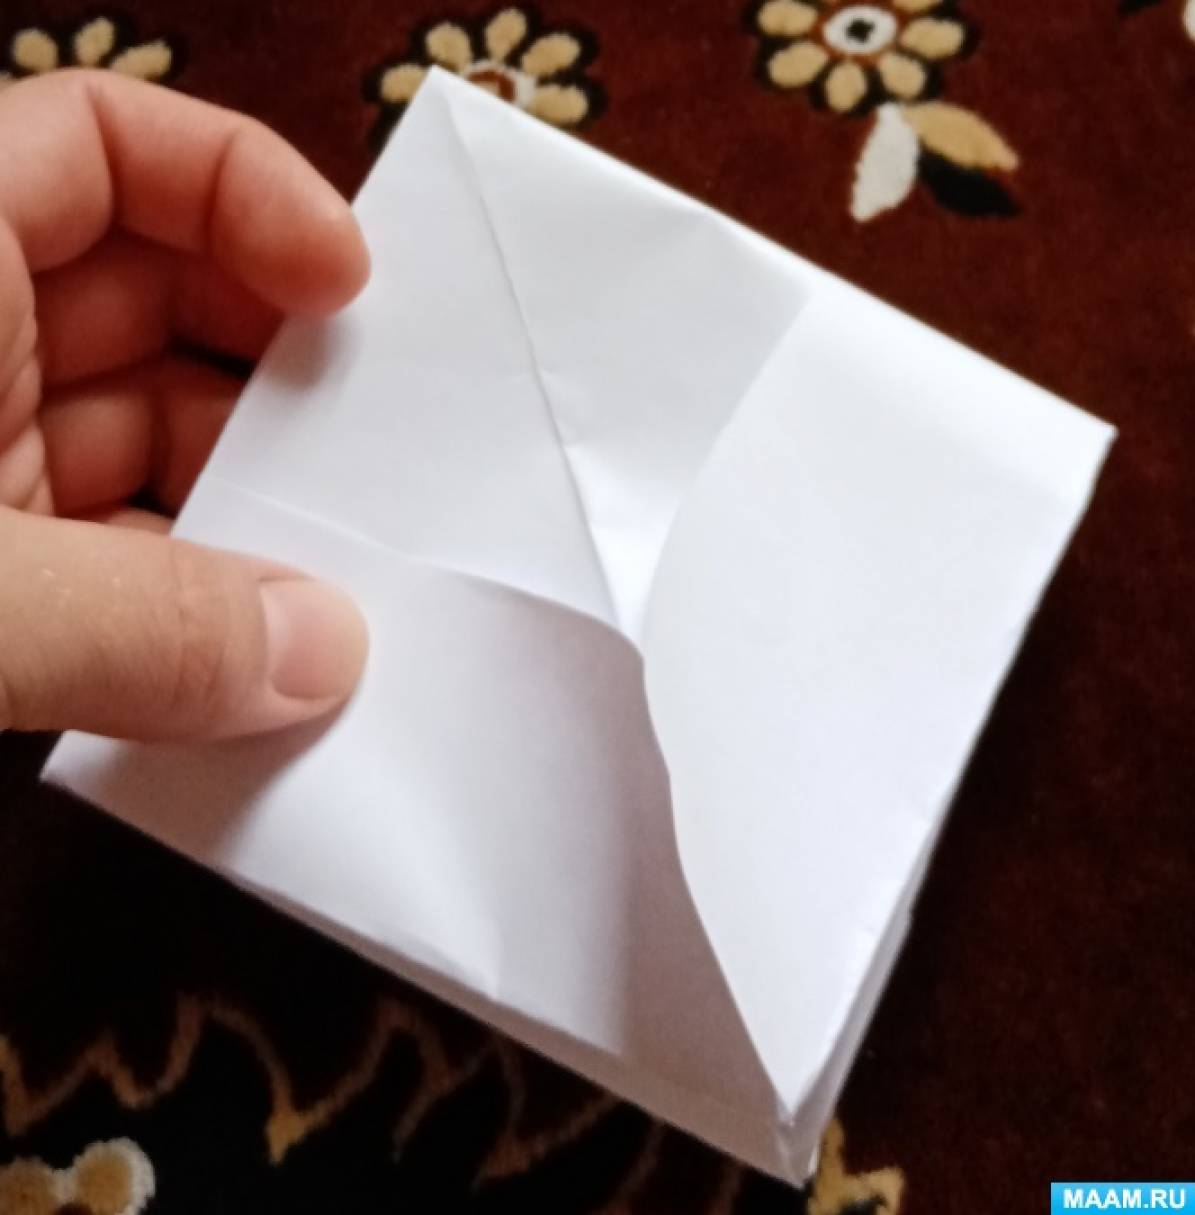 «По реке плывет кораблик». Конструирование из бумаги в технике оригами. Поэтапный мастер-класс. Воспитателям детских садов, школьным учителям и педагогам - Маам.ру